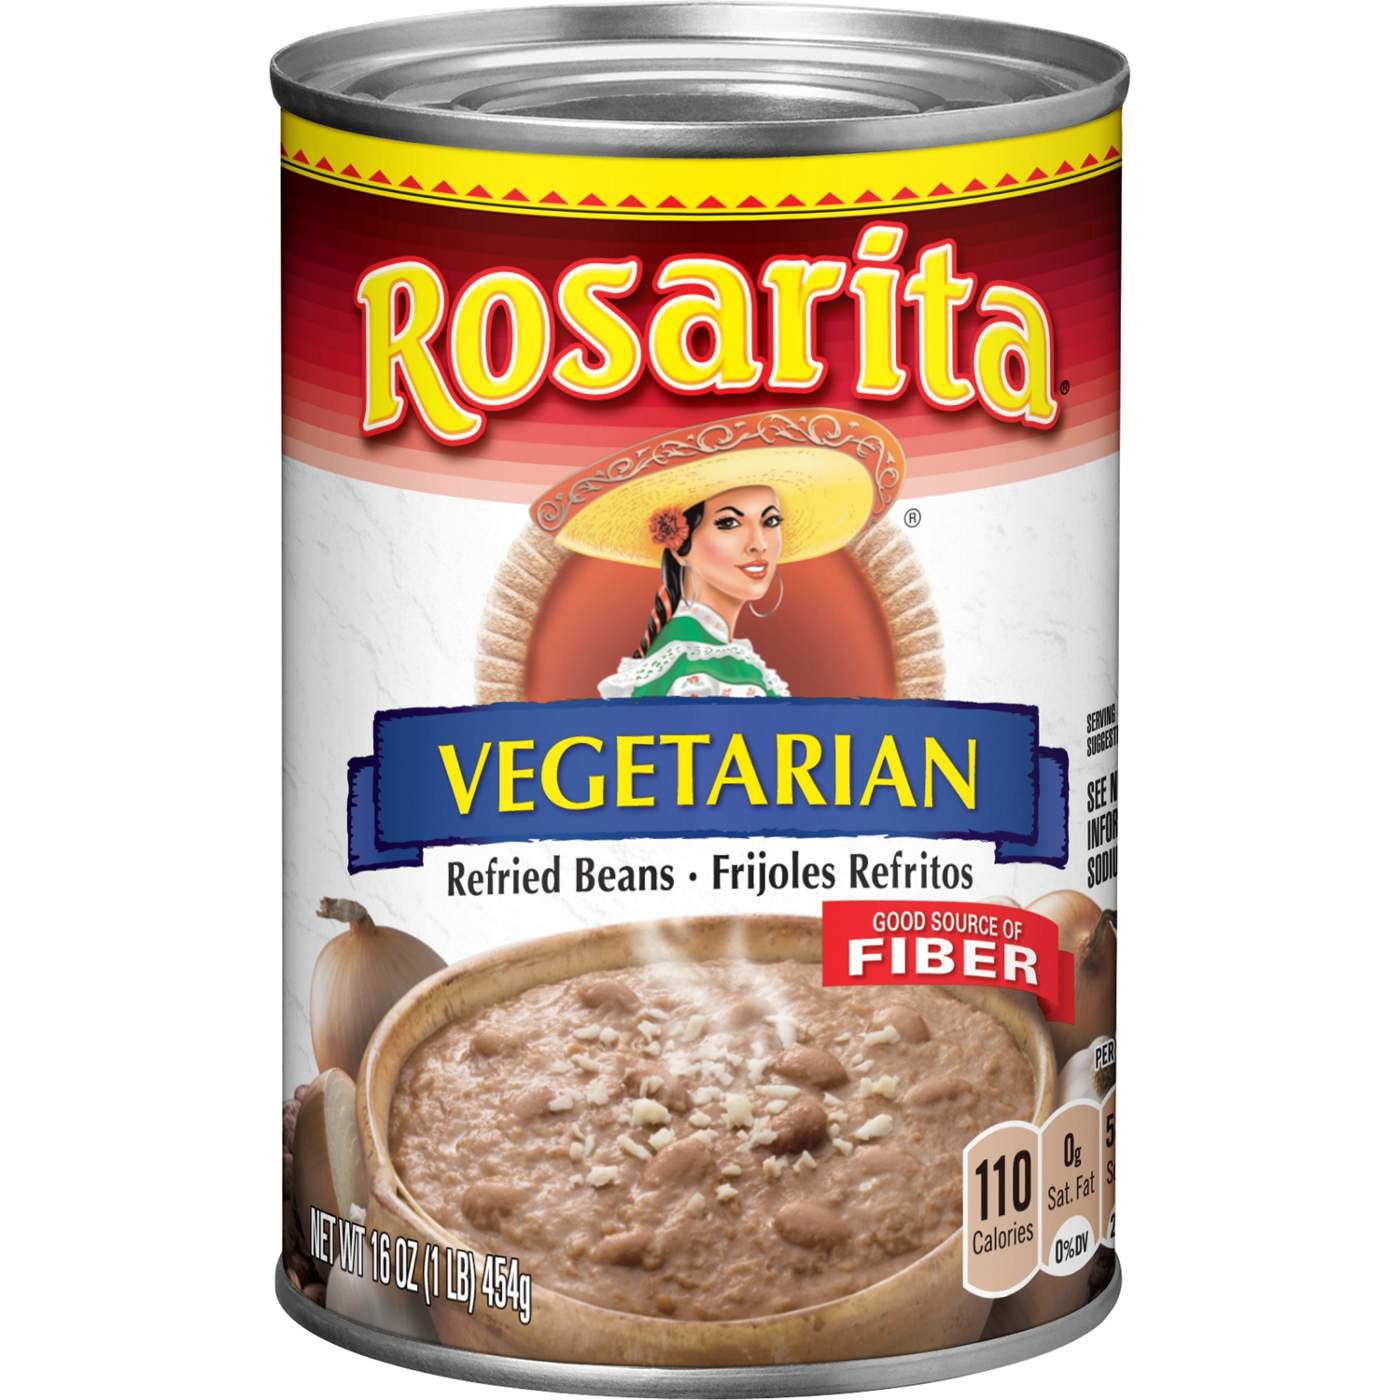 Rosarita Vegetarian Refried Beans; image 1 of 5